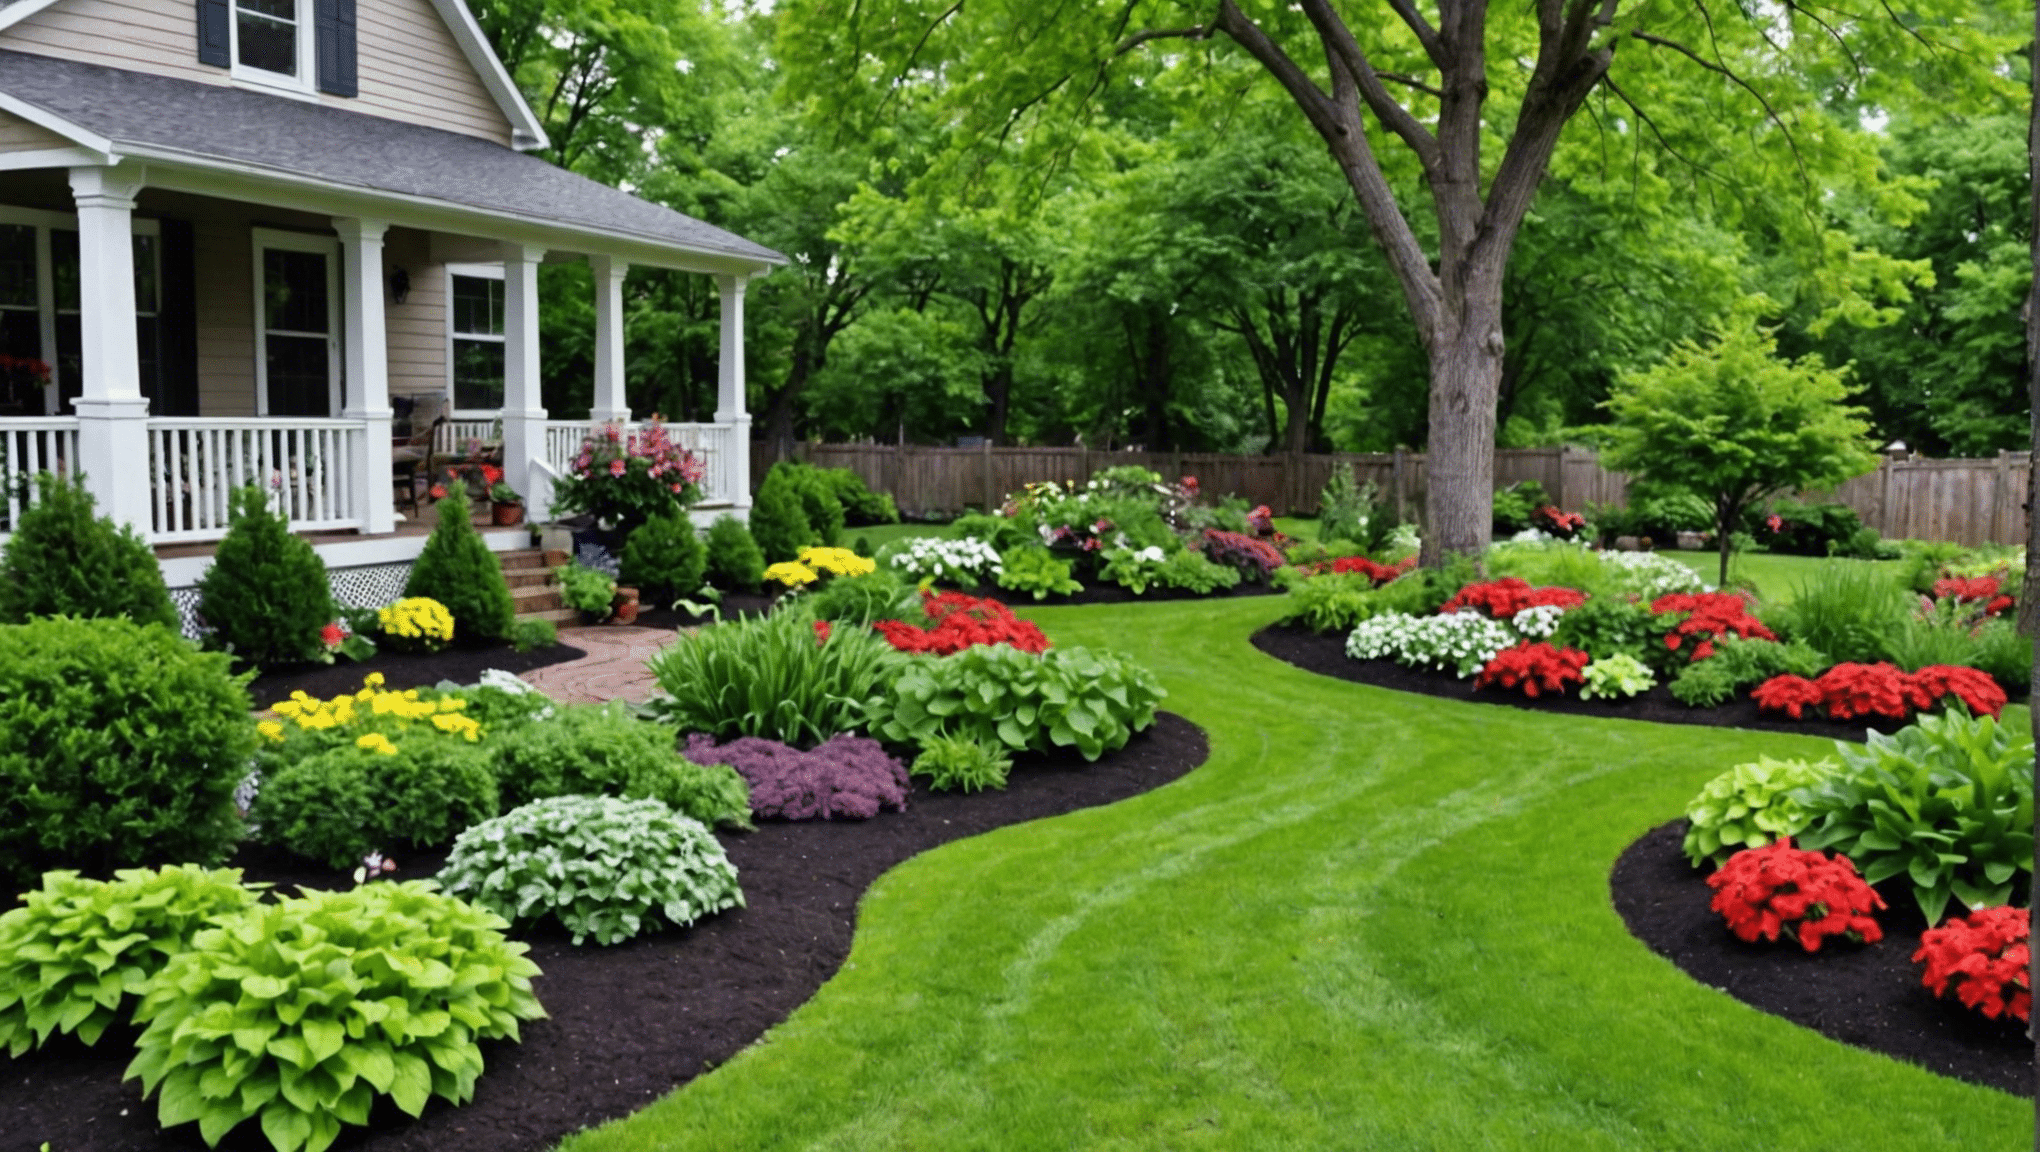 laat u inspireren met moestuinideeën voor de voortuin om uw buitenruimte te transformeren in een overvloedige en prachtige tuin.